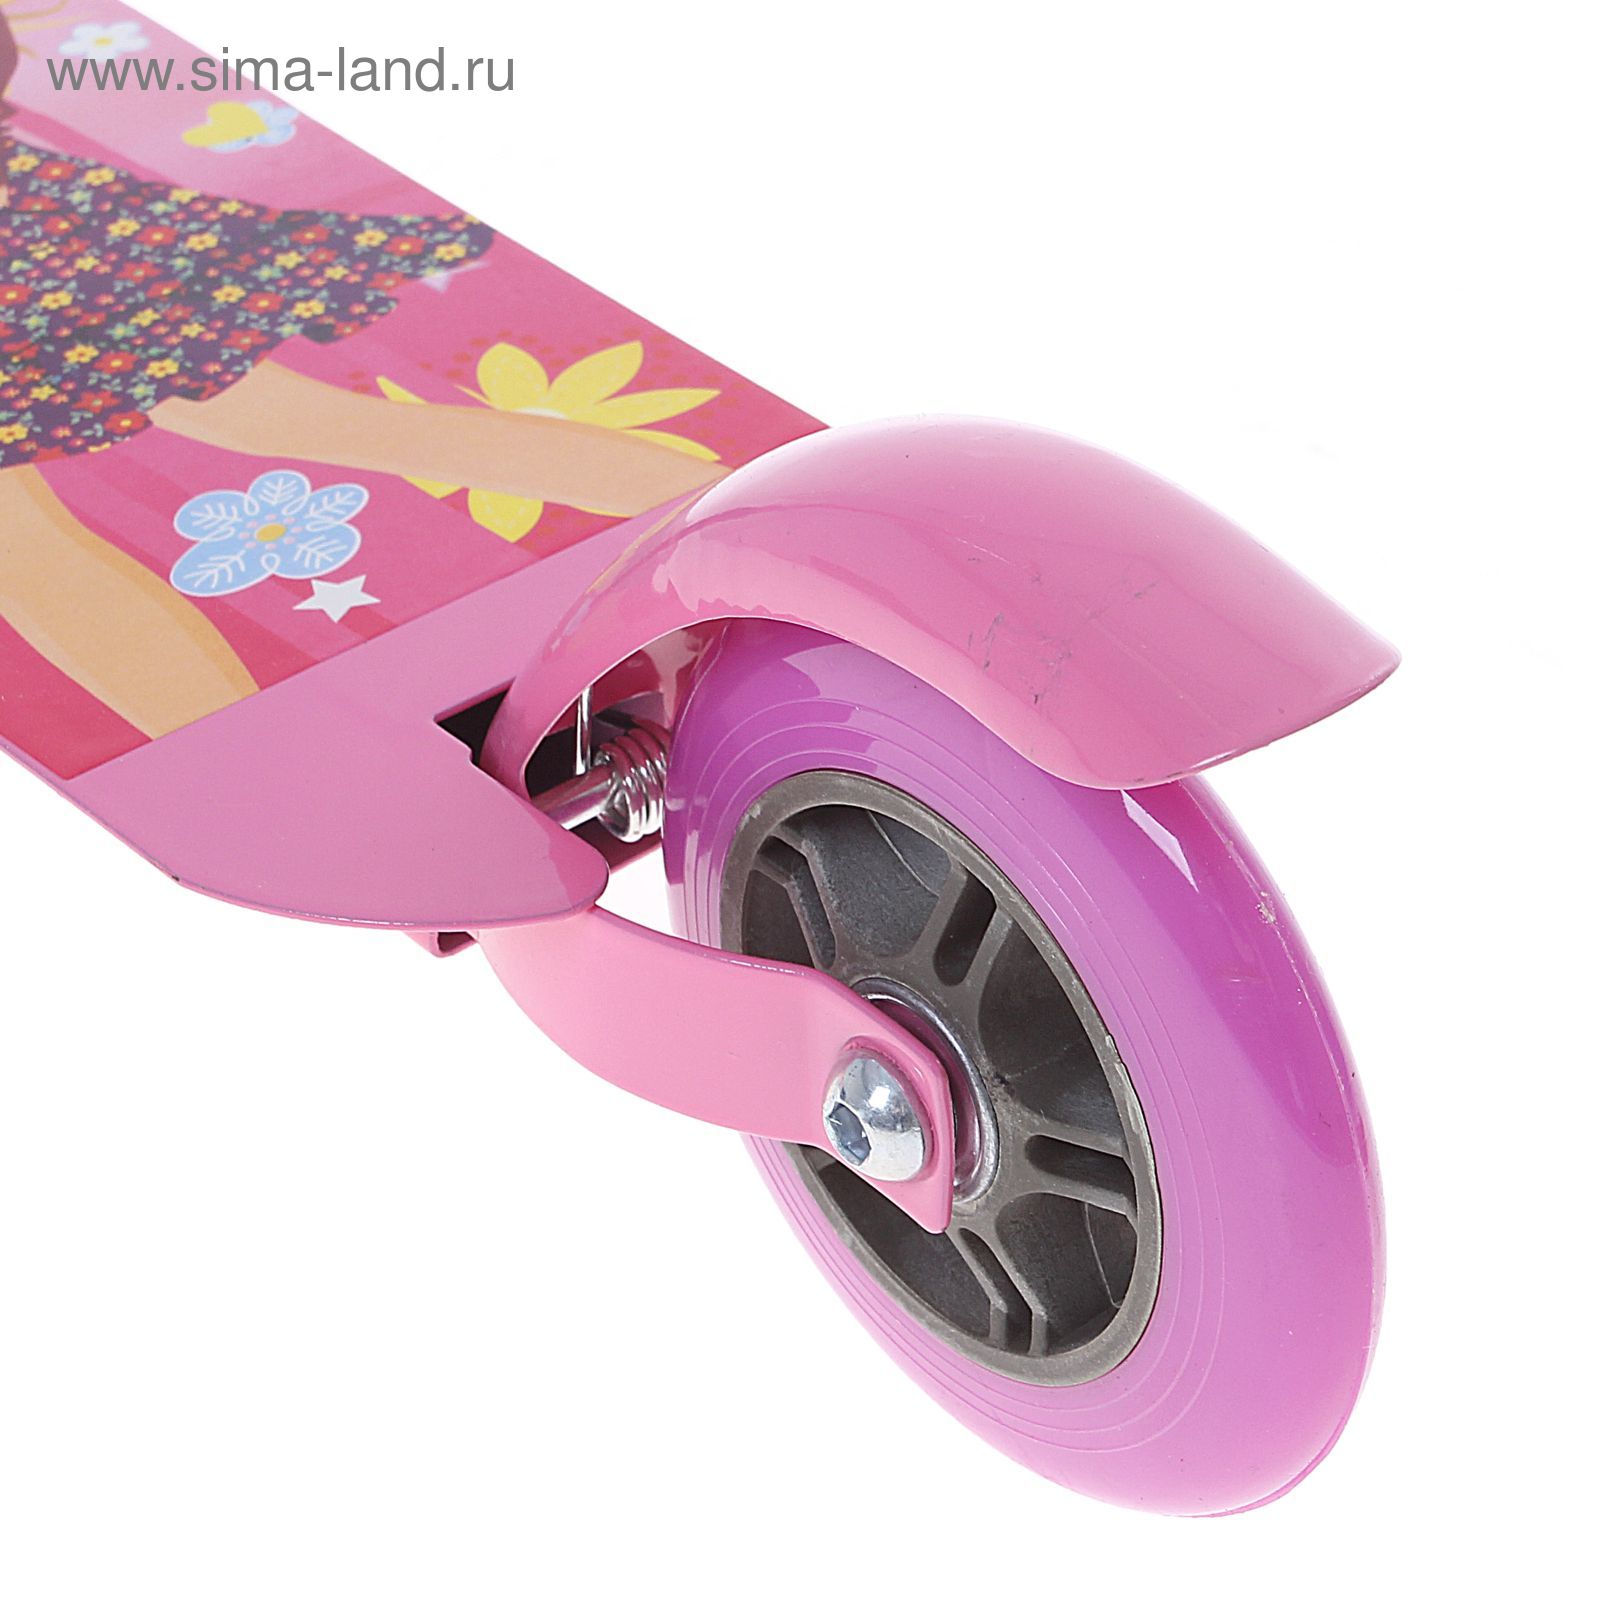 Самокат стальной OT-015, два колеса PVC, d=100 мм, цвет: розовый, до 40 кг